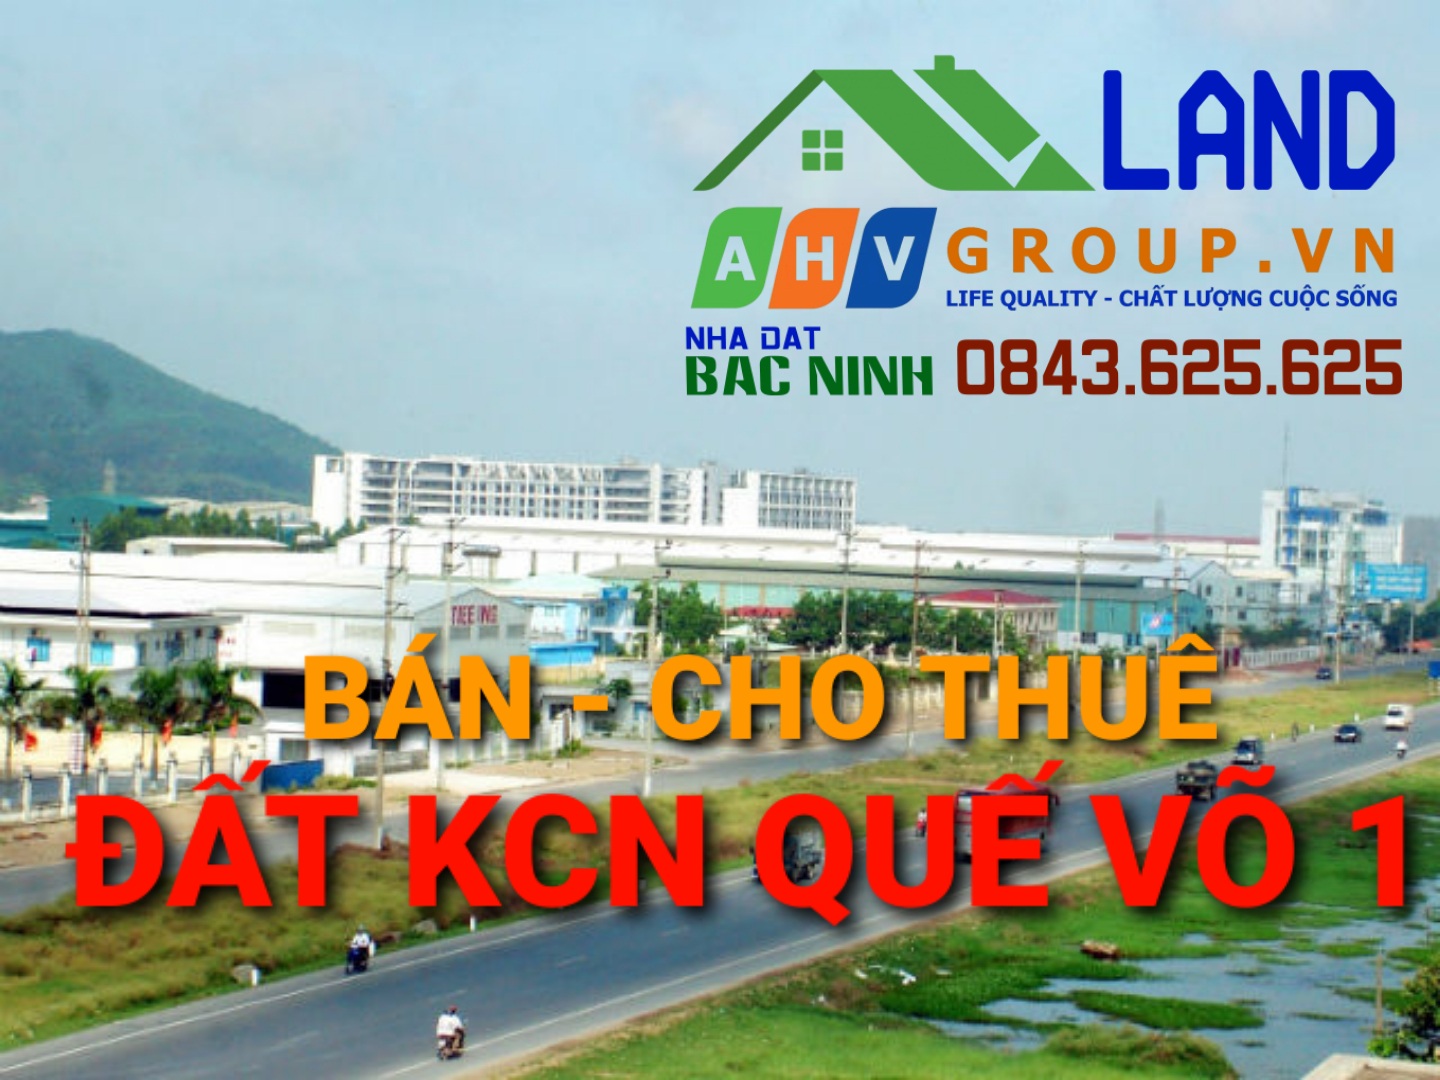 Bán, Cho thuê Đất, Nhà xưởng - Khu công nghiệp Quế Võ 1 - Bắc Ninh